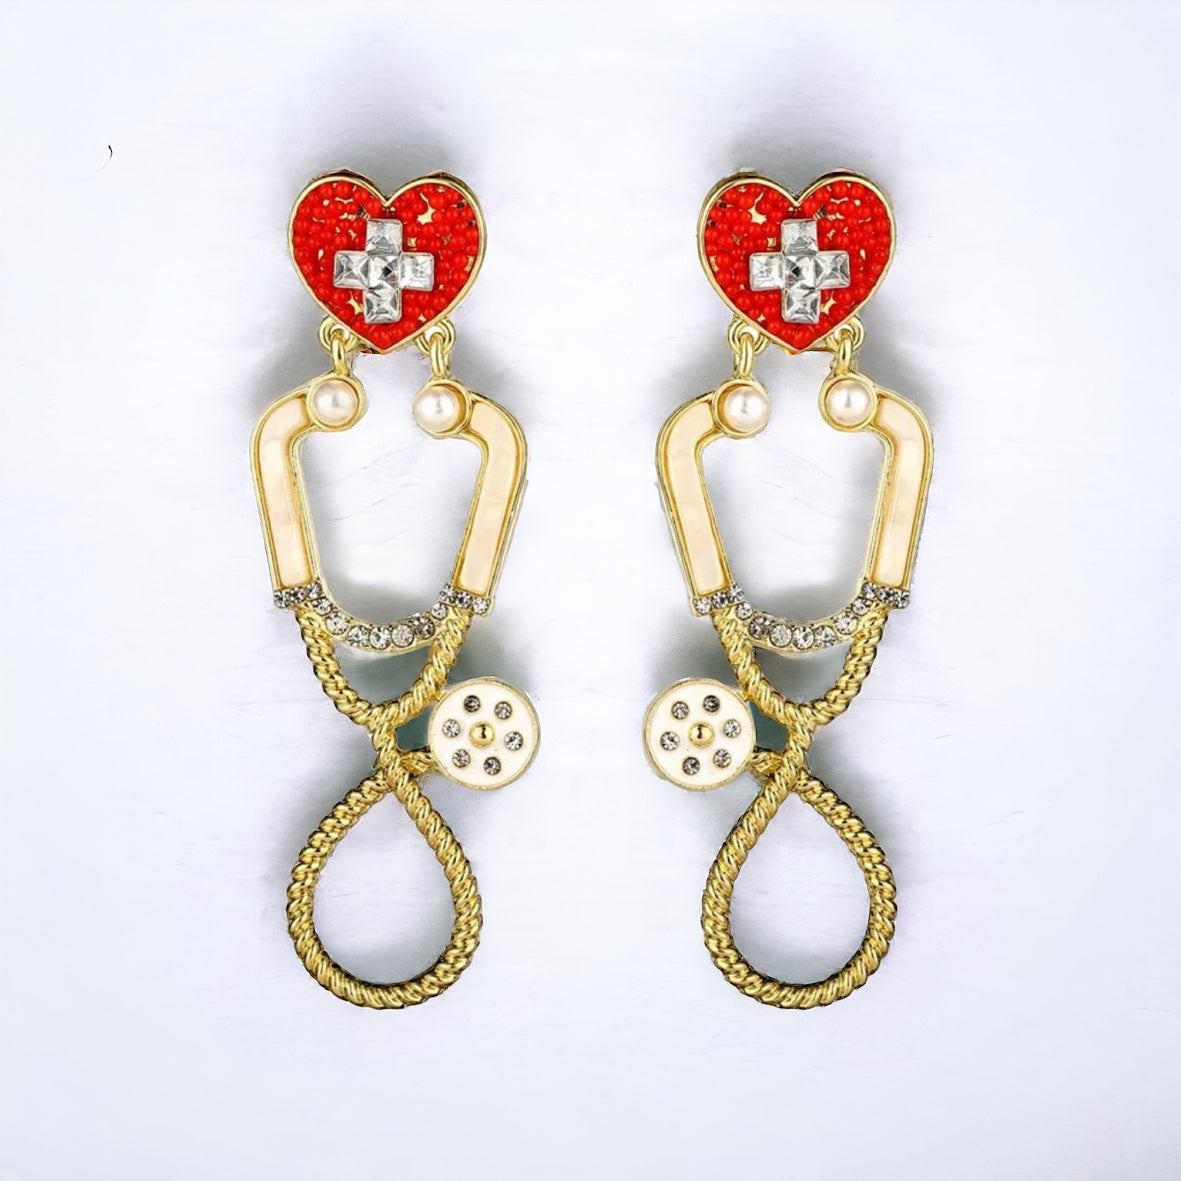 Stethoscope Earrings - Nurse Earrings, Nurse Practitioner, Doctor Earrings, Handmade Earrings, Nurse Appreciation Gift, Nurse Jewelry